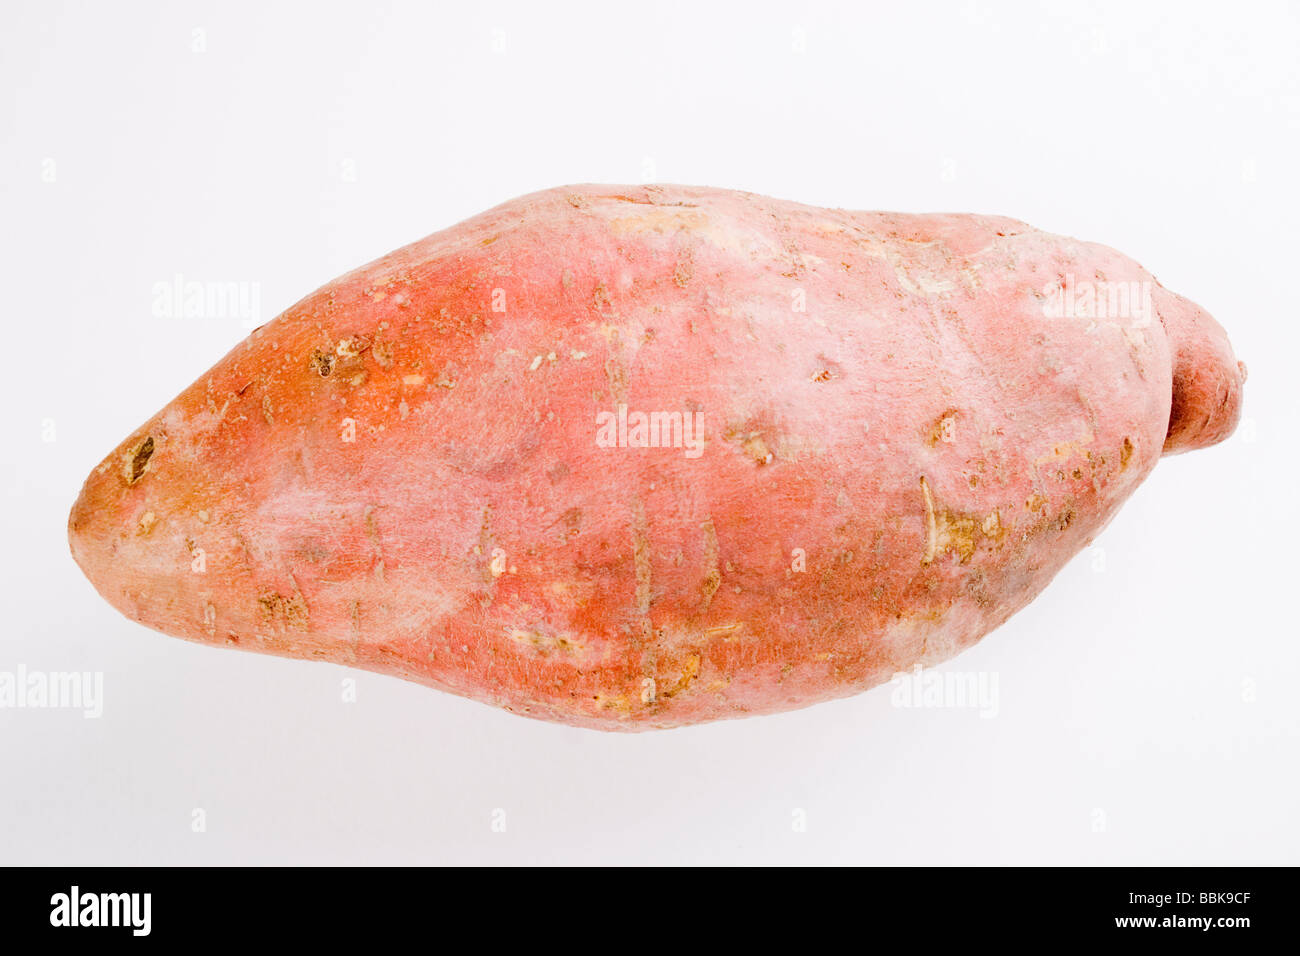 Giant sweet potato Stock Photo